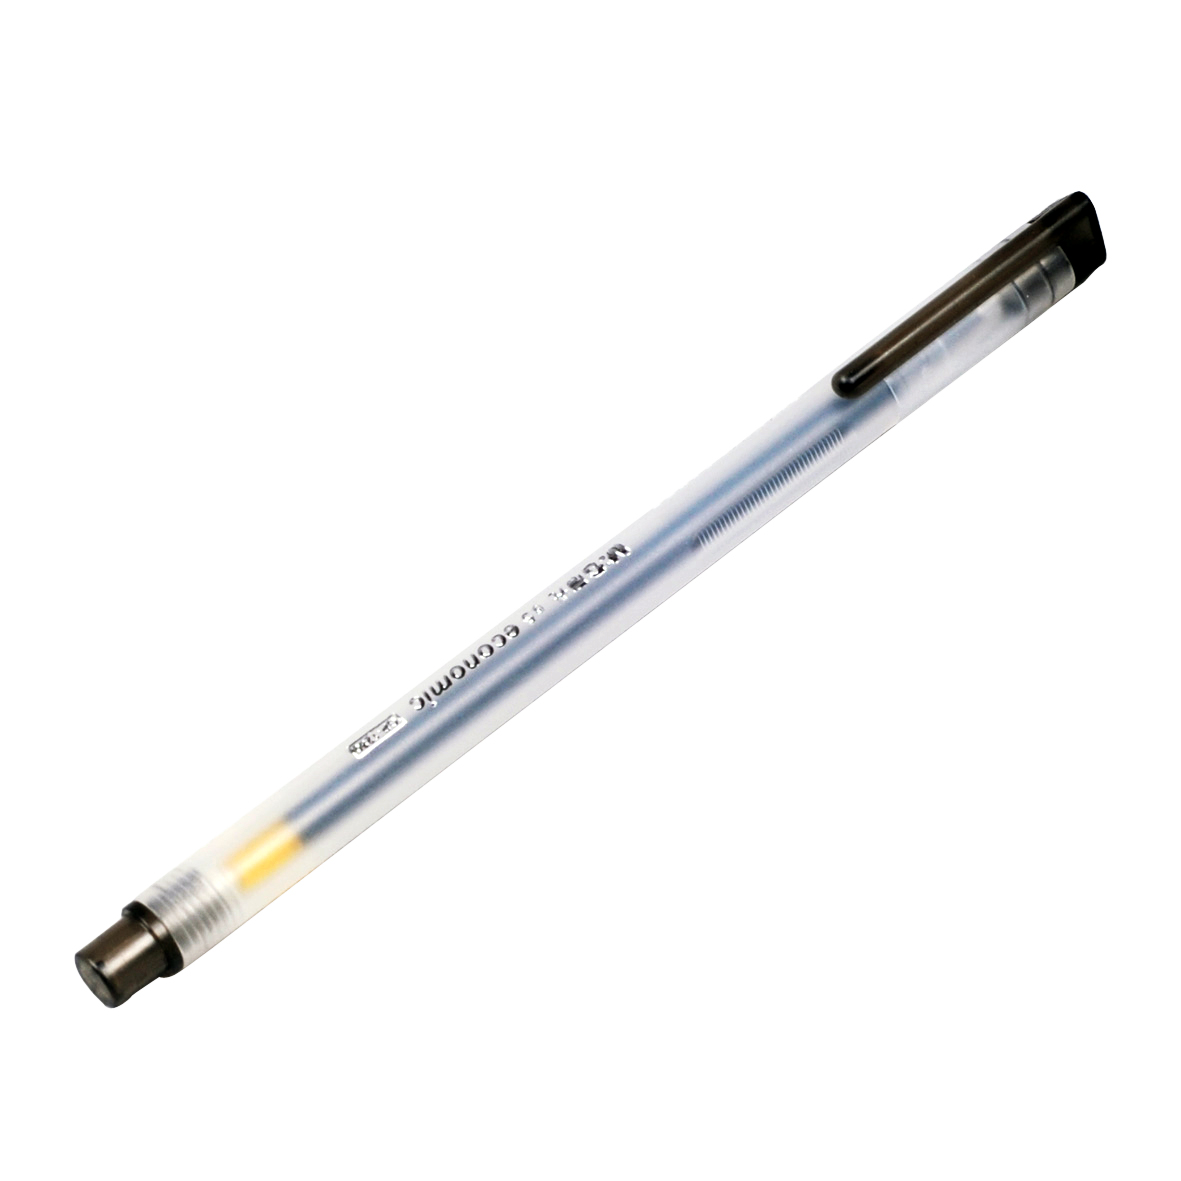 包邮晨光文具中性笔 清新gp-1280 磨砂感 0.5mm 针管办公水笔